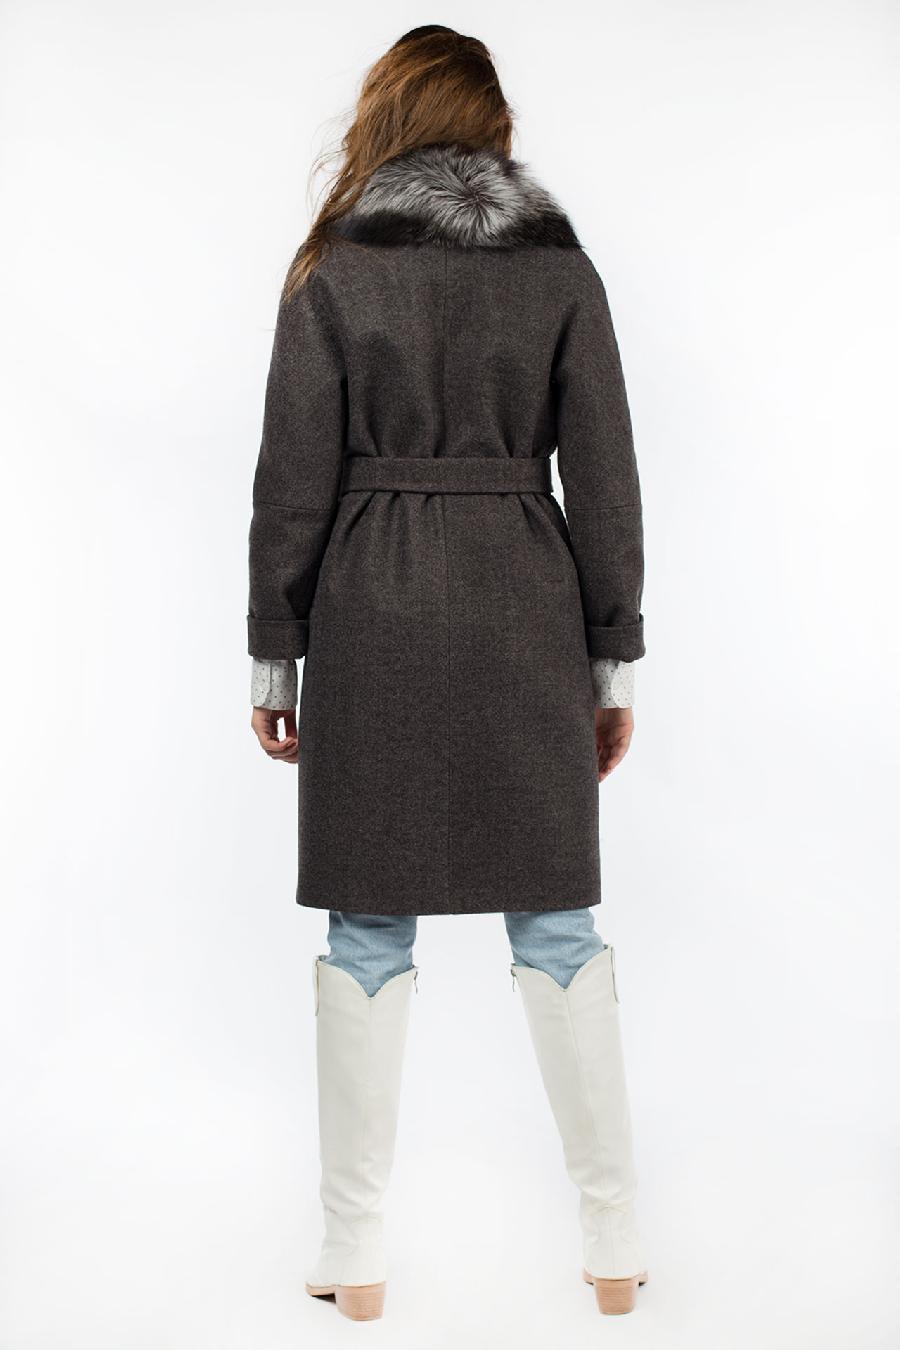 02-3022 Пальто женское утепленное (пояс) валяная шерсть серо-черный